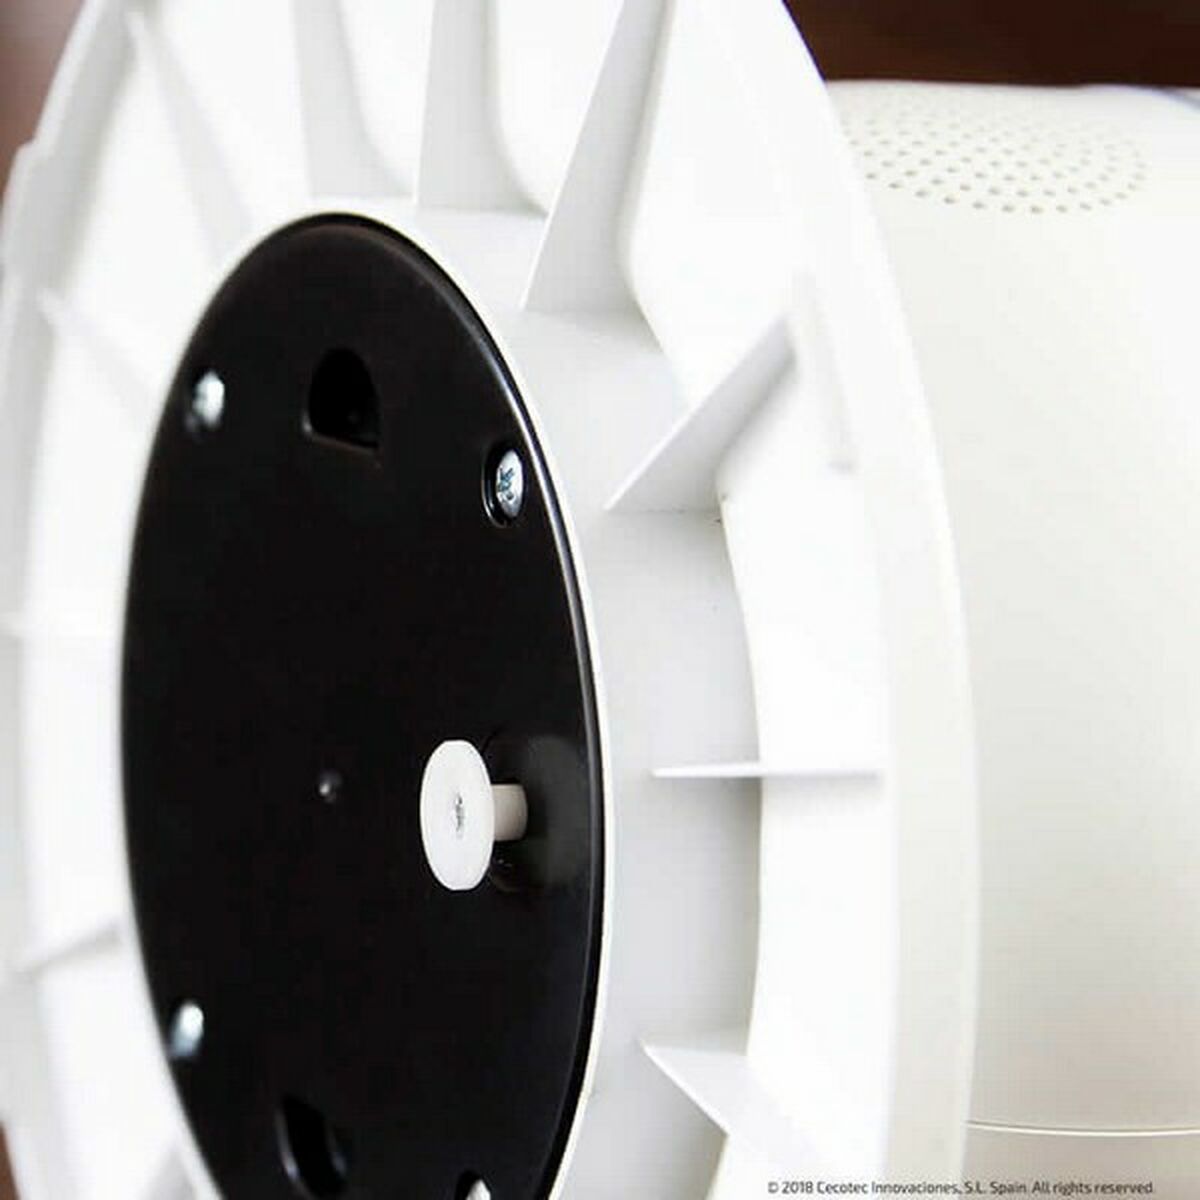 Kaufe Elektrischer Keramikheizer Cecotec Ready Warm 10100 Smart Ceramic 2200W Weiß bei AWK Flagship um € 81.00